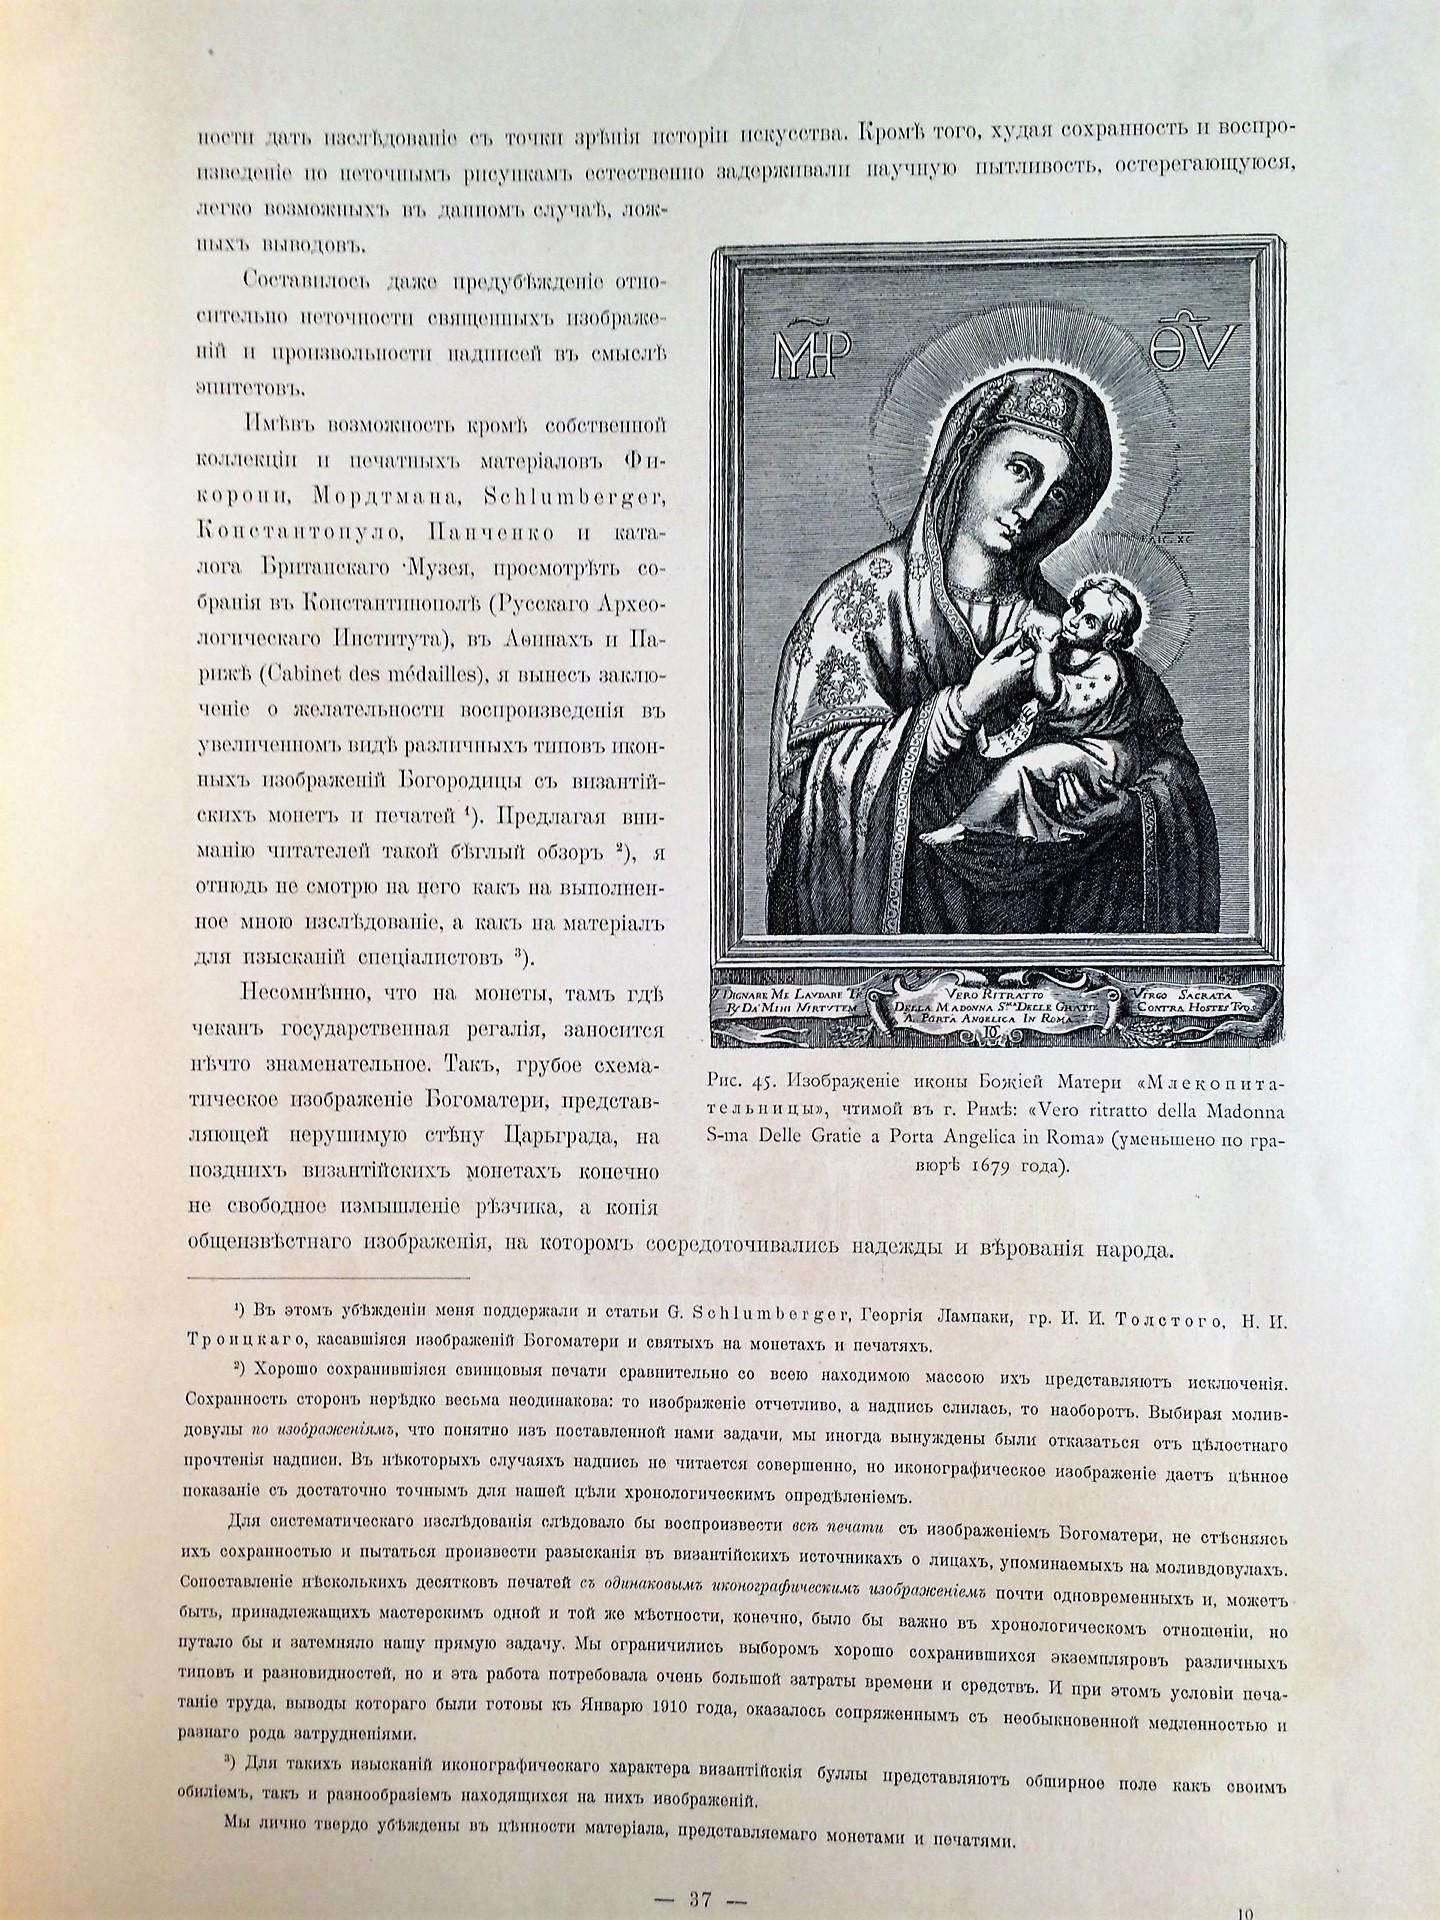  Историческое значение итало-греческой иконописи, изображения Богоматери в произведениях итало-греческих иконописцев и их влияние на композиции некоторых православных русских икон.